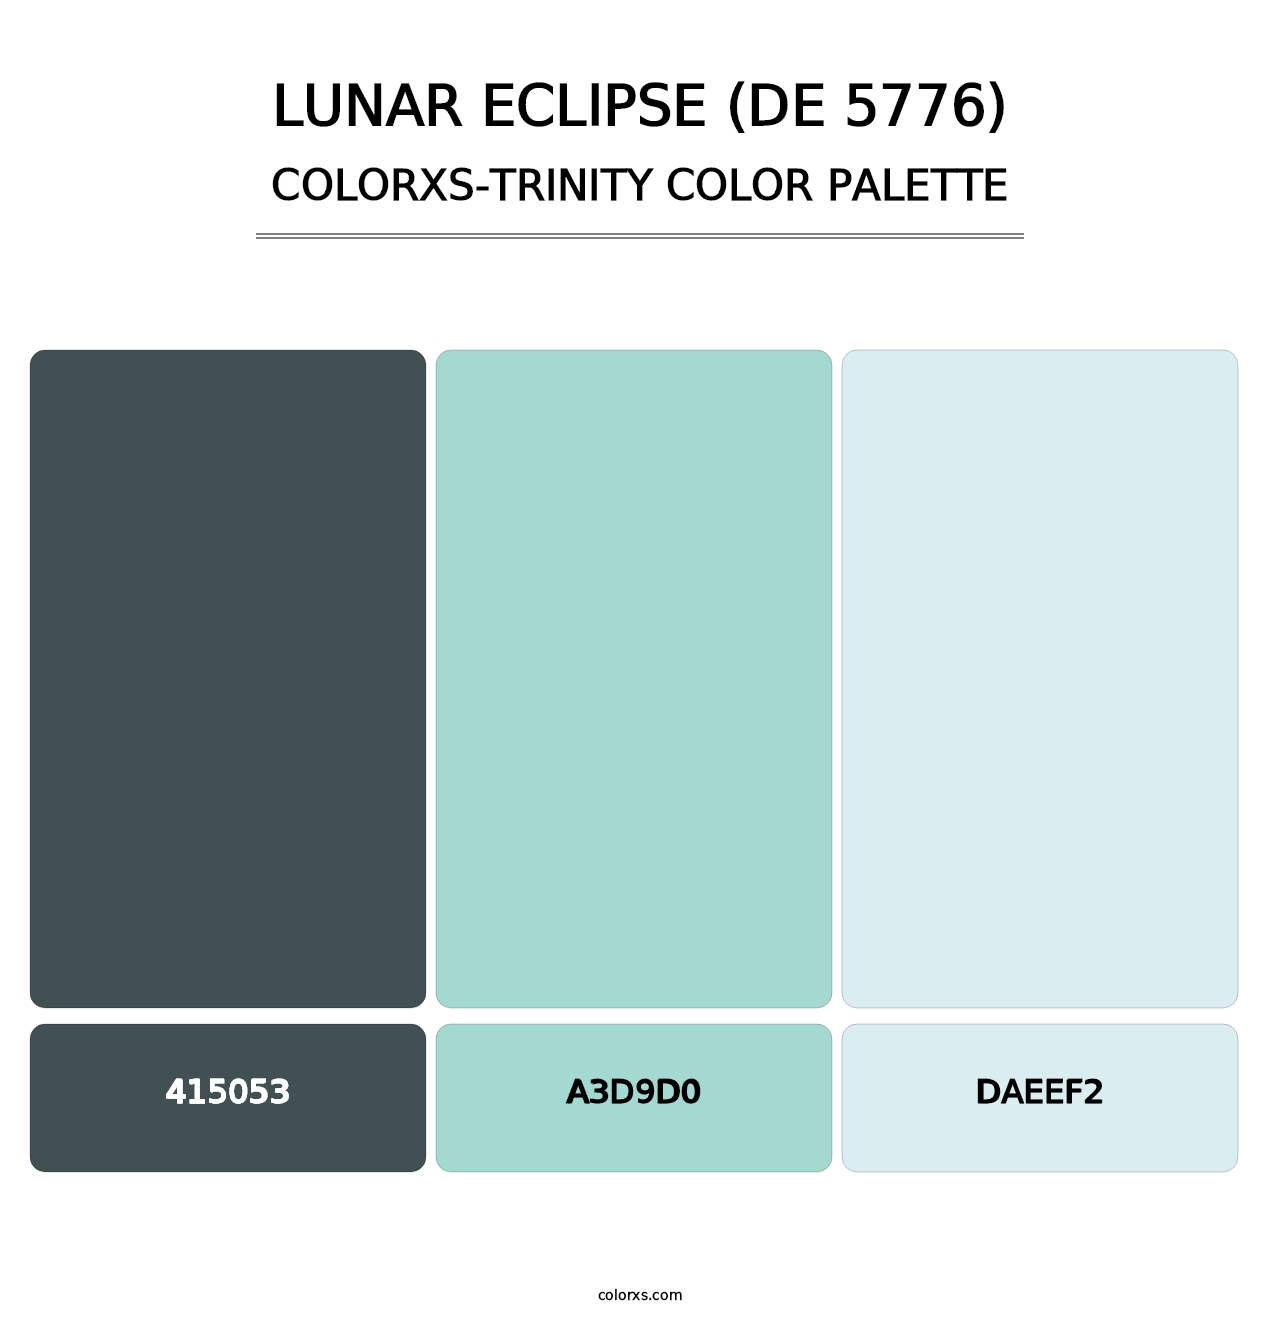 Lunar Eclipse (DE 5776) - Colorxs Trinity Palette